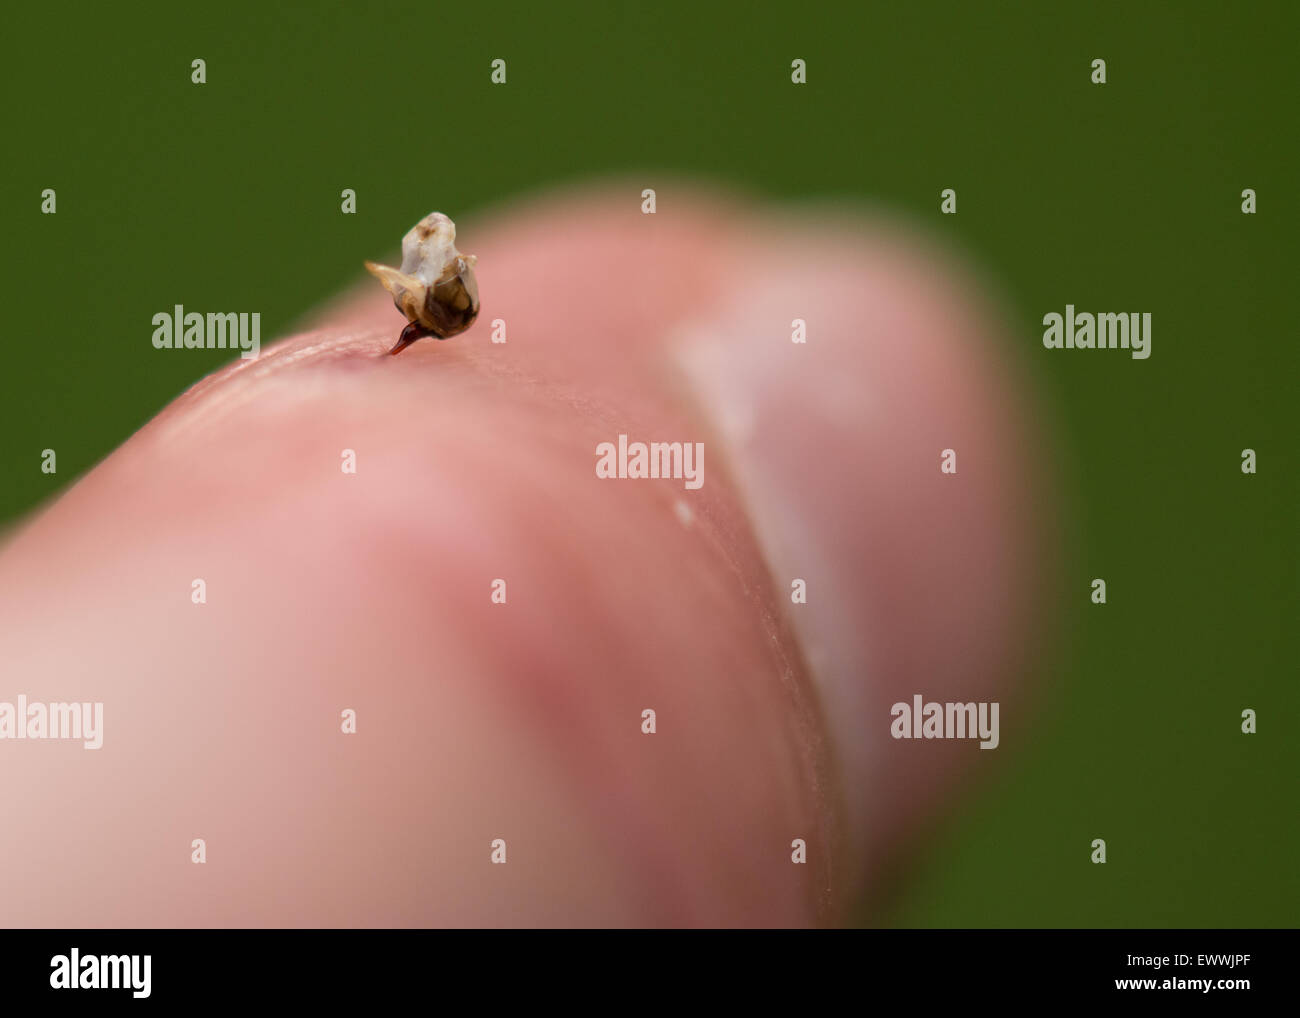 Honig Biene (Apis) Stinger - zusammen mit Teil des Verdauungstraktes und Nerven und Muskeln - in einem menschlichen finger Stockfoto